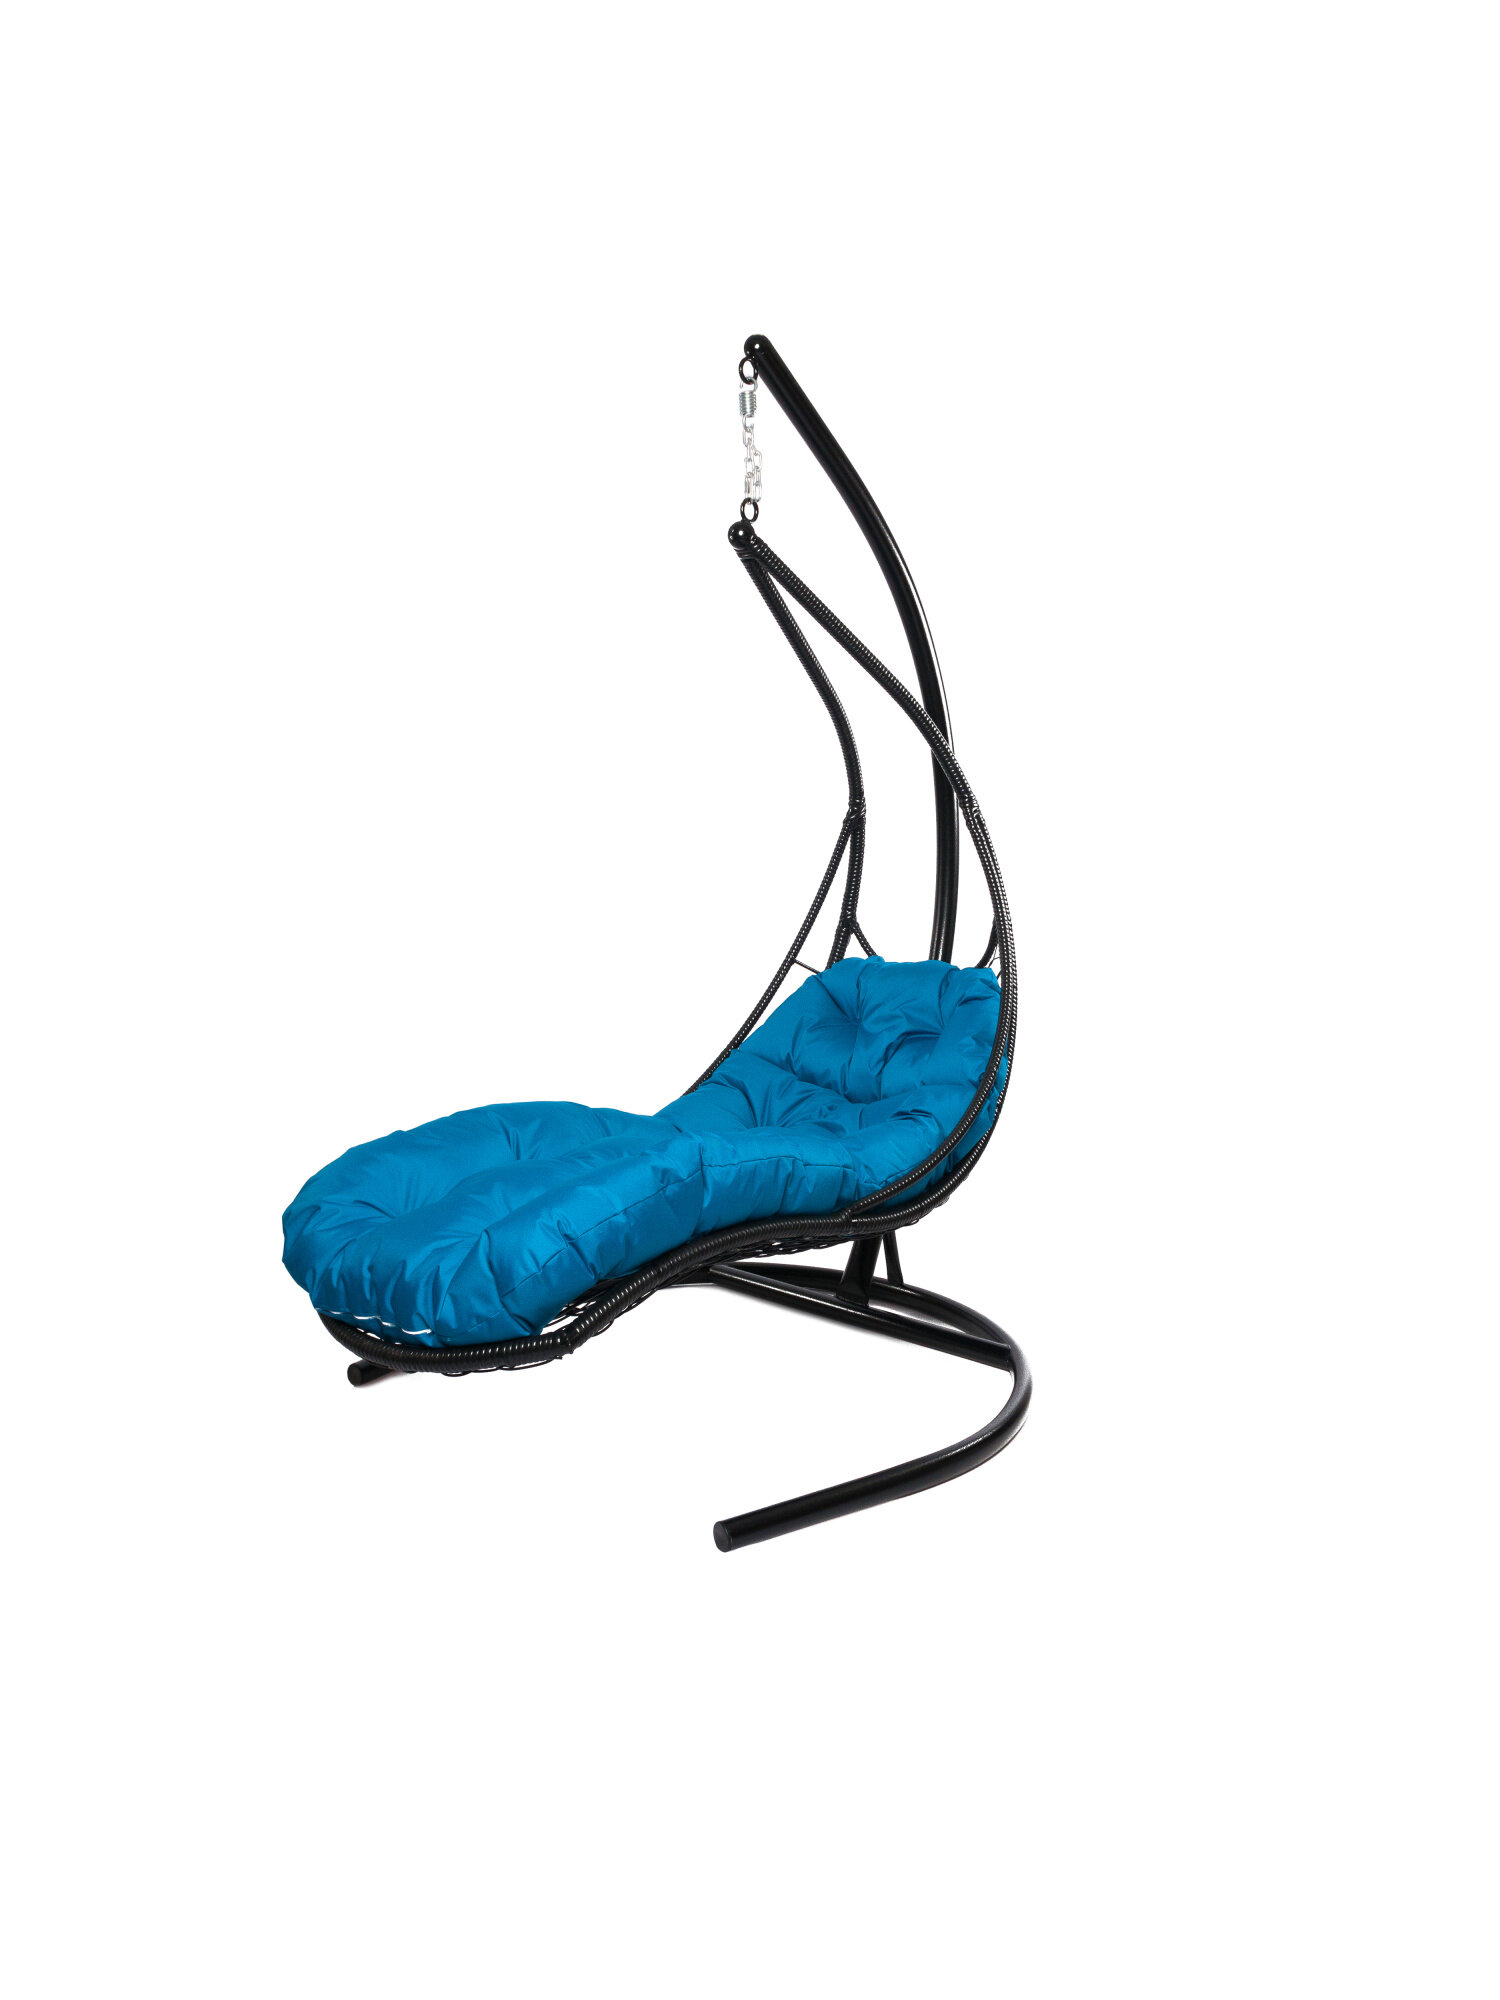 Подвесное кресло M-group лежачее с ротангом черное голубая подушка